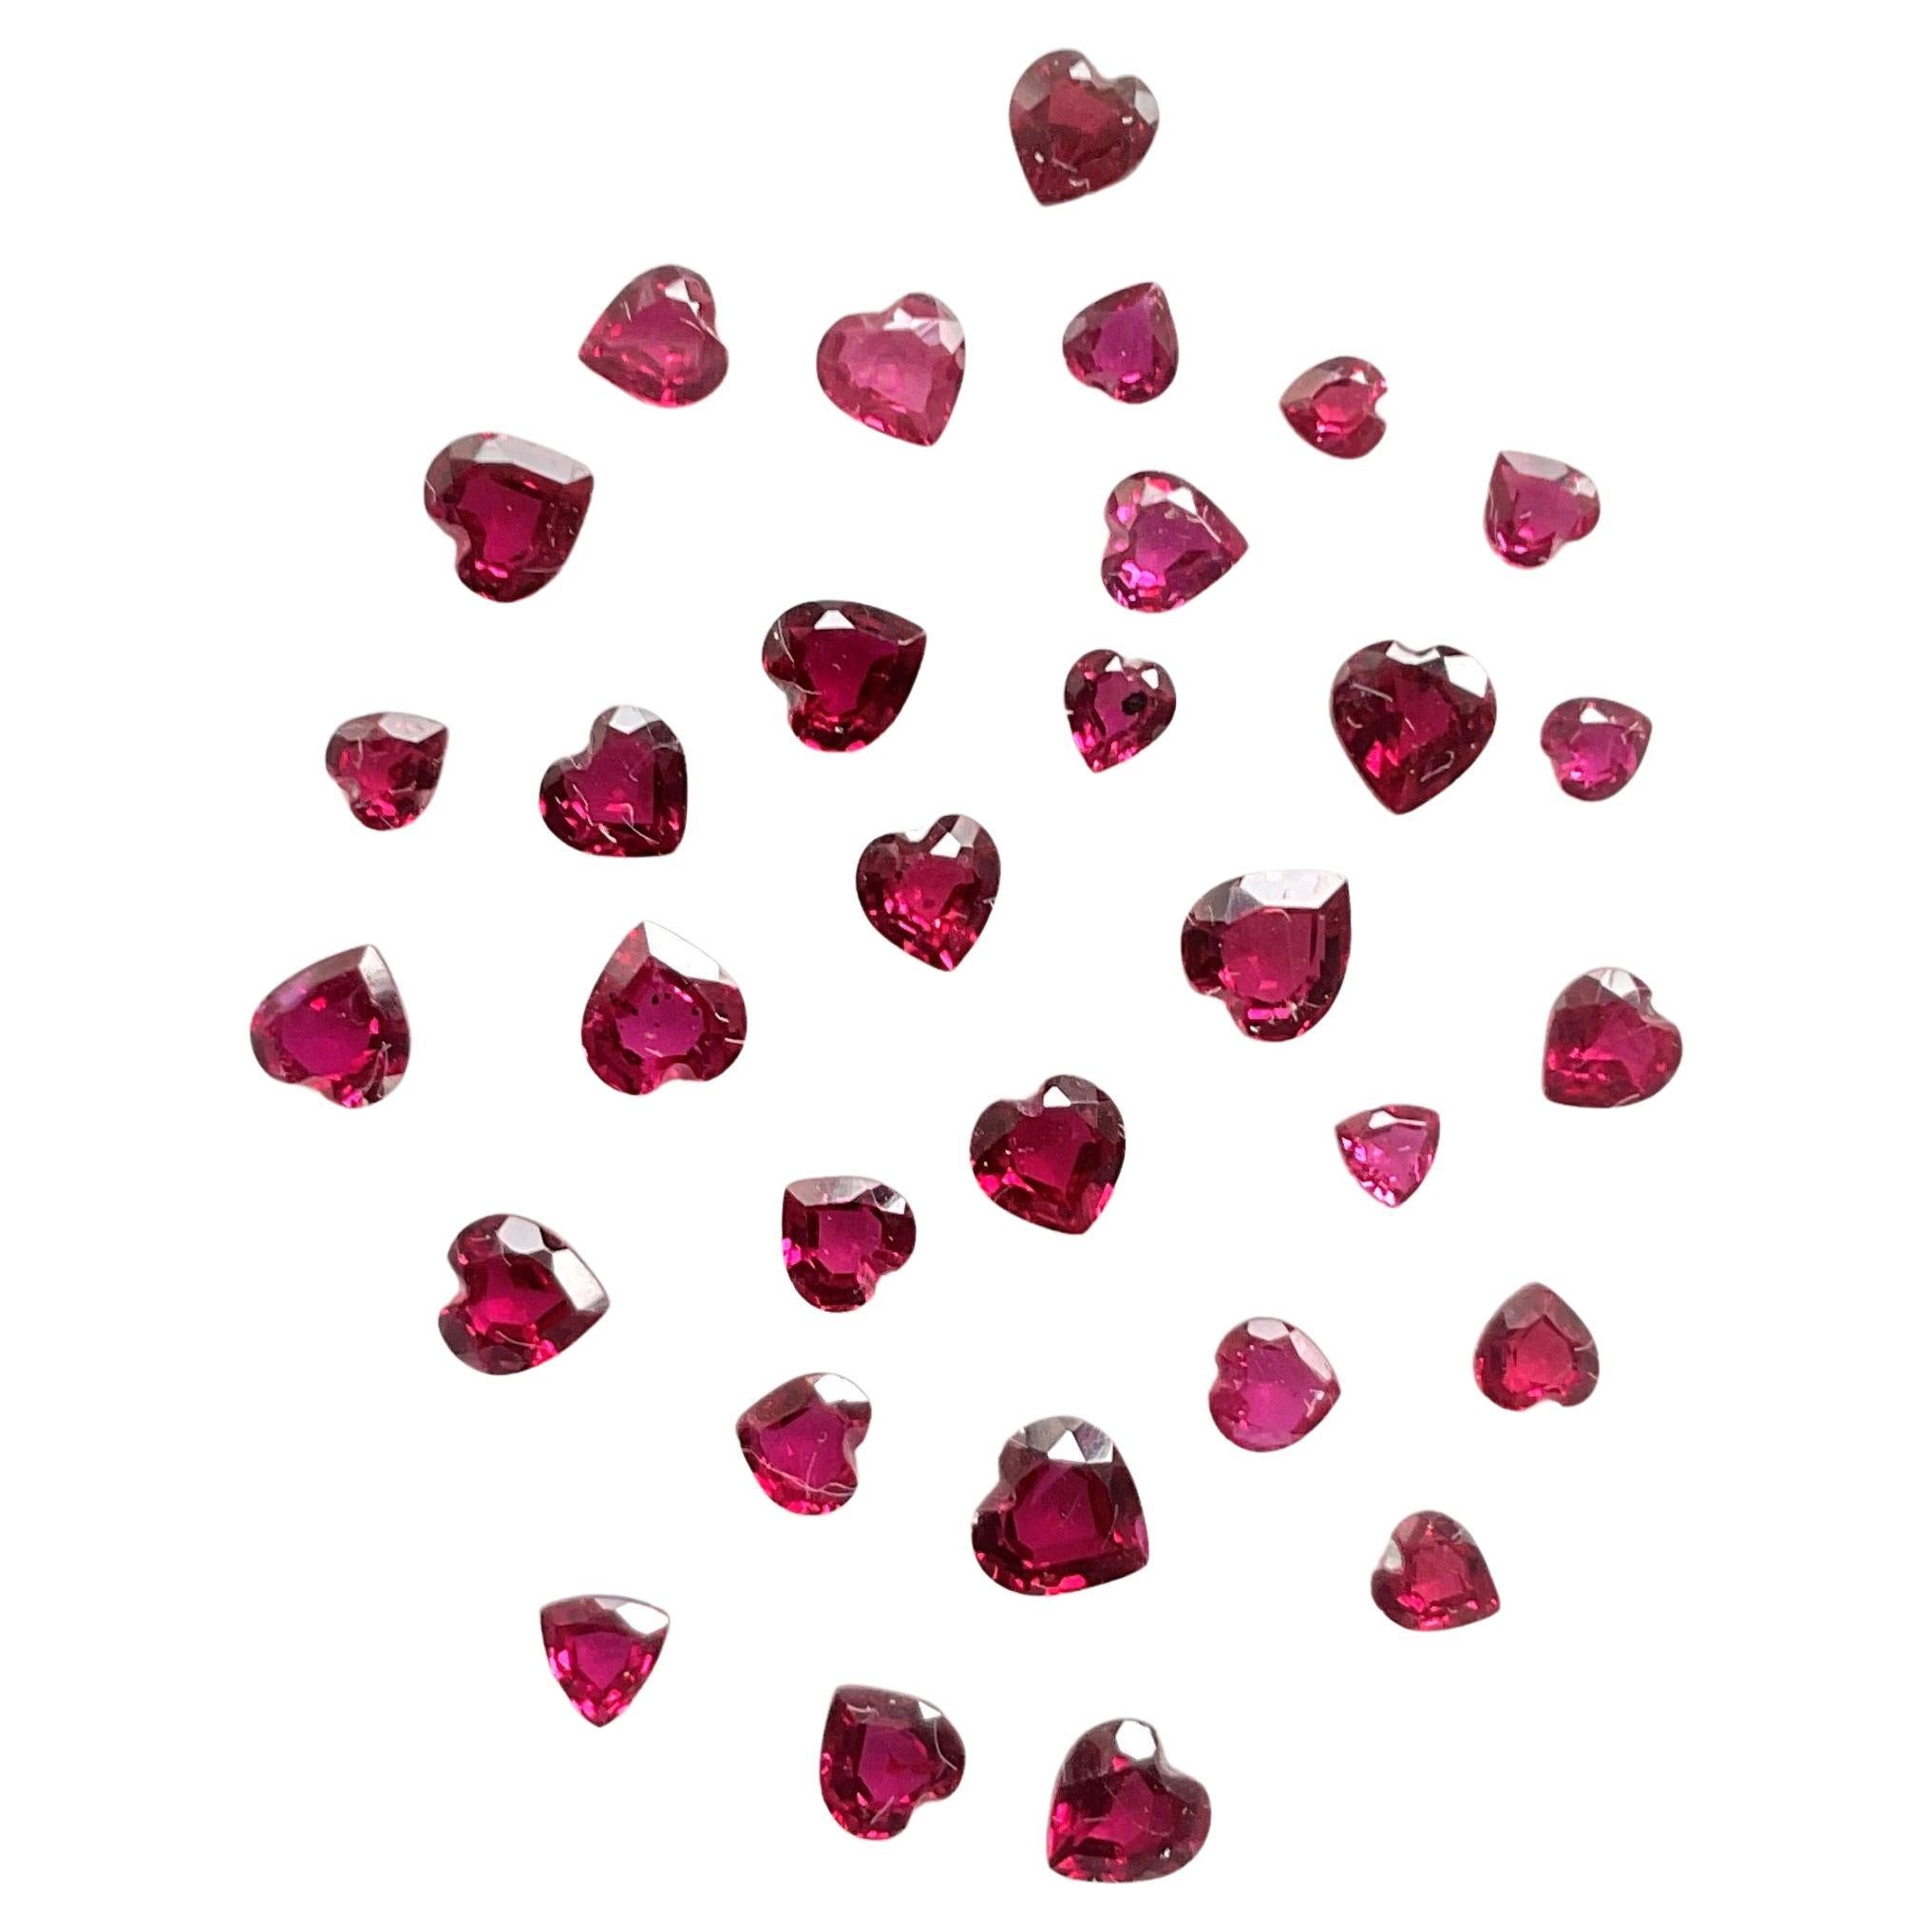 3.59 Carats Mozambique Ruby Top Quality Heart Cut stone No Heat Natural Gemstone (Rubis du Mozambique de qualité supérieure, taillé en cœur, sans chaleur)